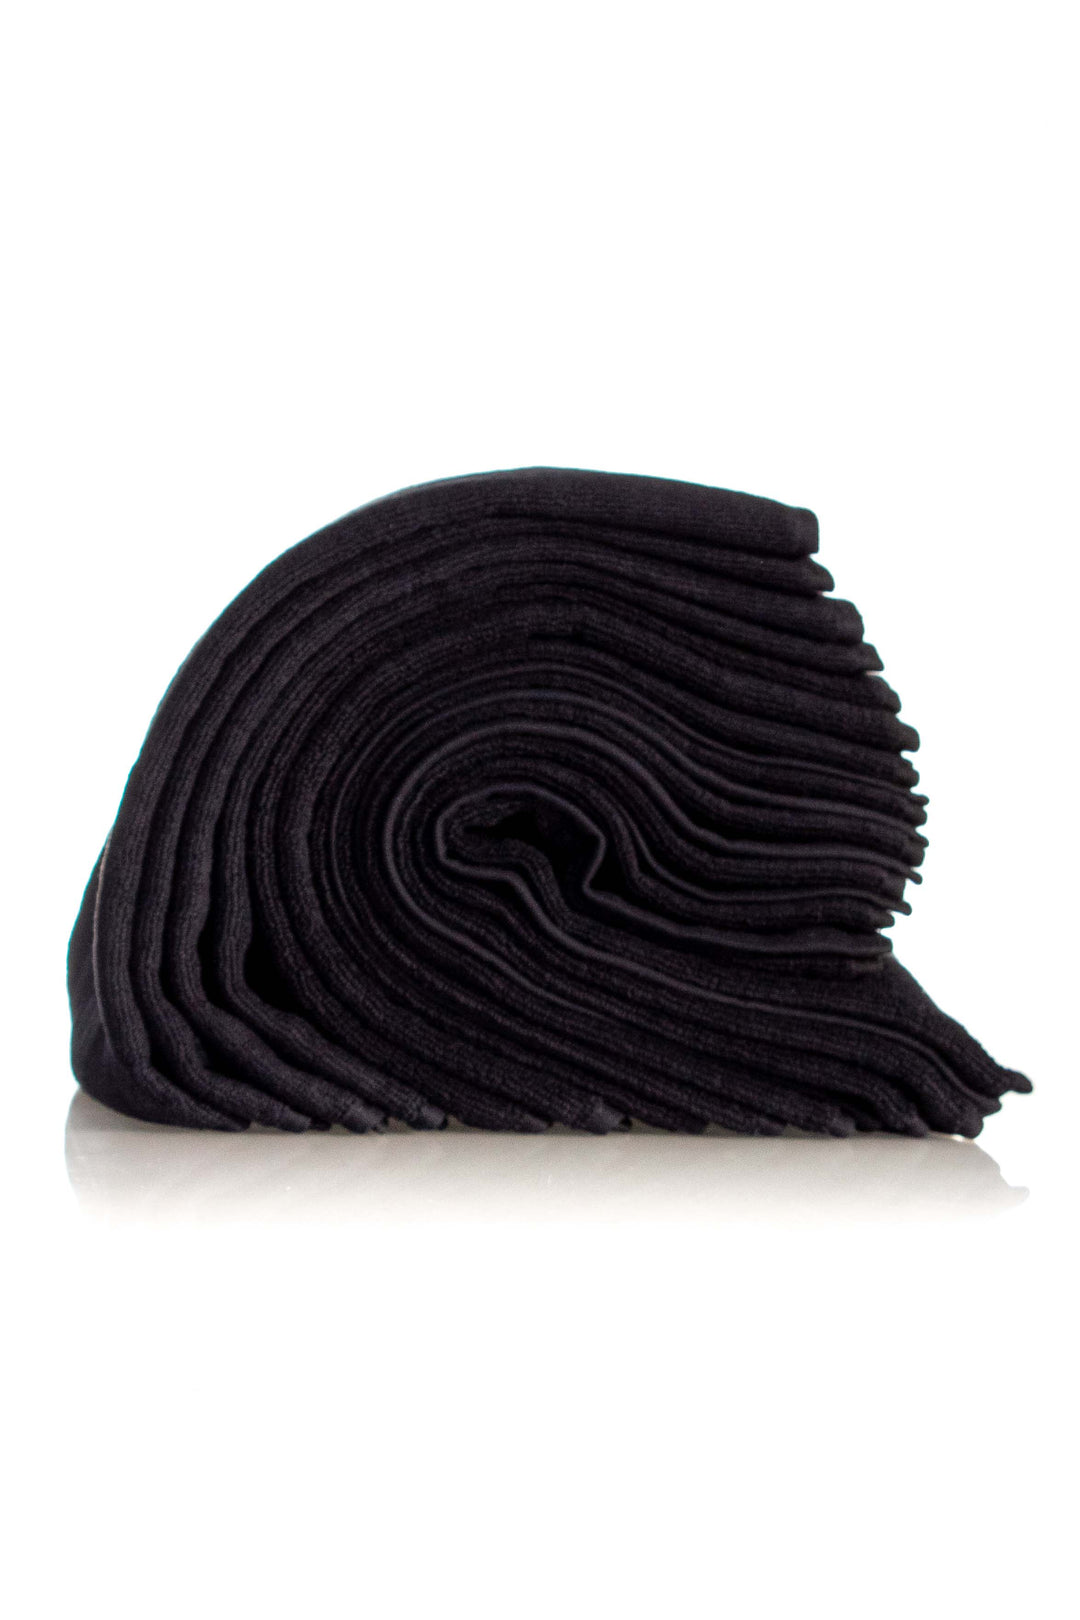 GLIDE BLACK SALON TOWELS 12 PACK